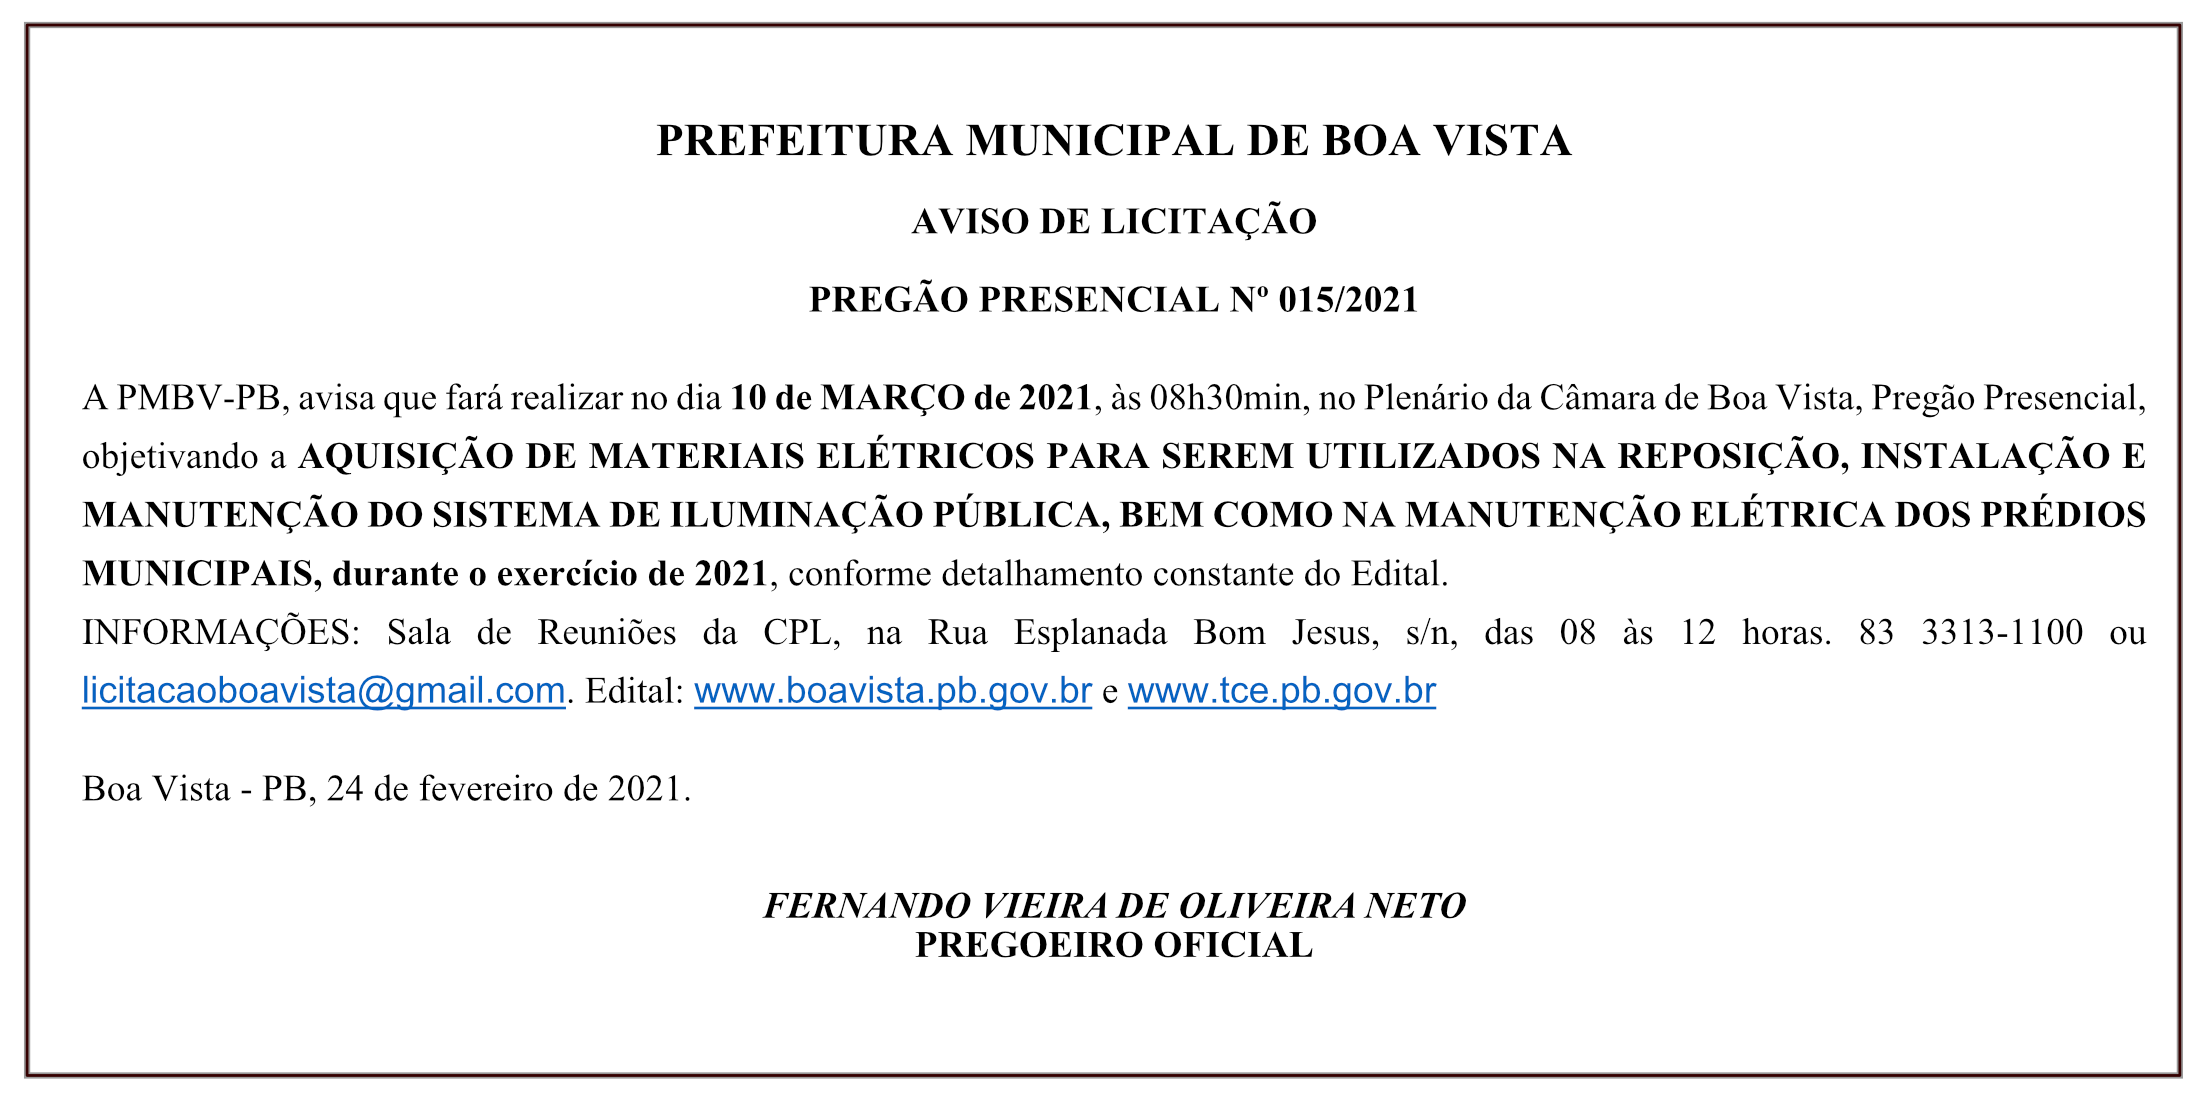 PREFEITURA MUNICIPAL DE BOA VISTA – AVISO DE LICITAÇÃO – PREGÃO PRESENCIAL Nº 015/2021